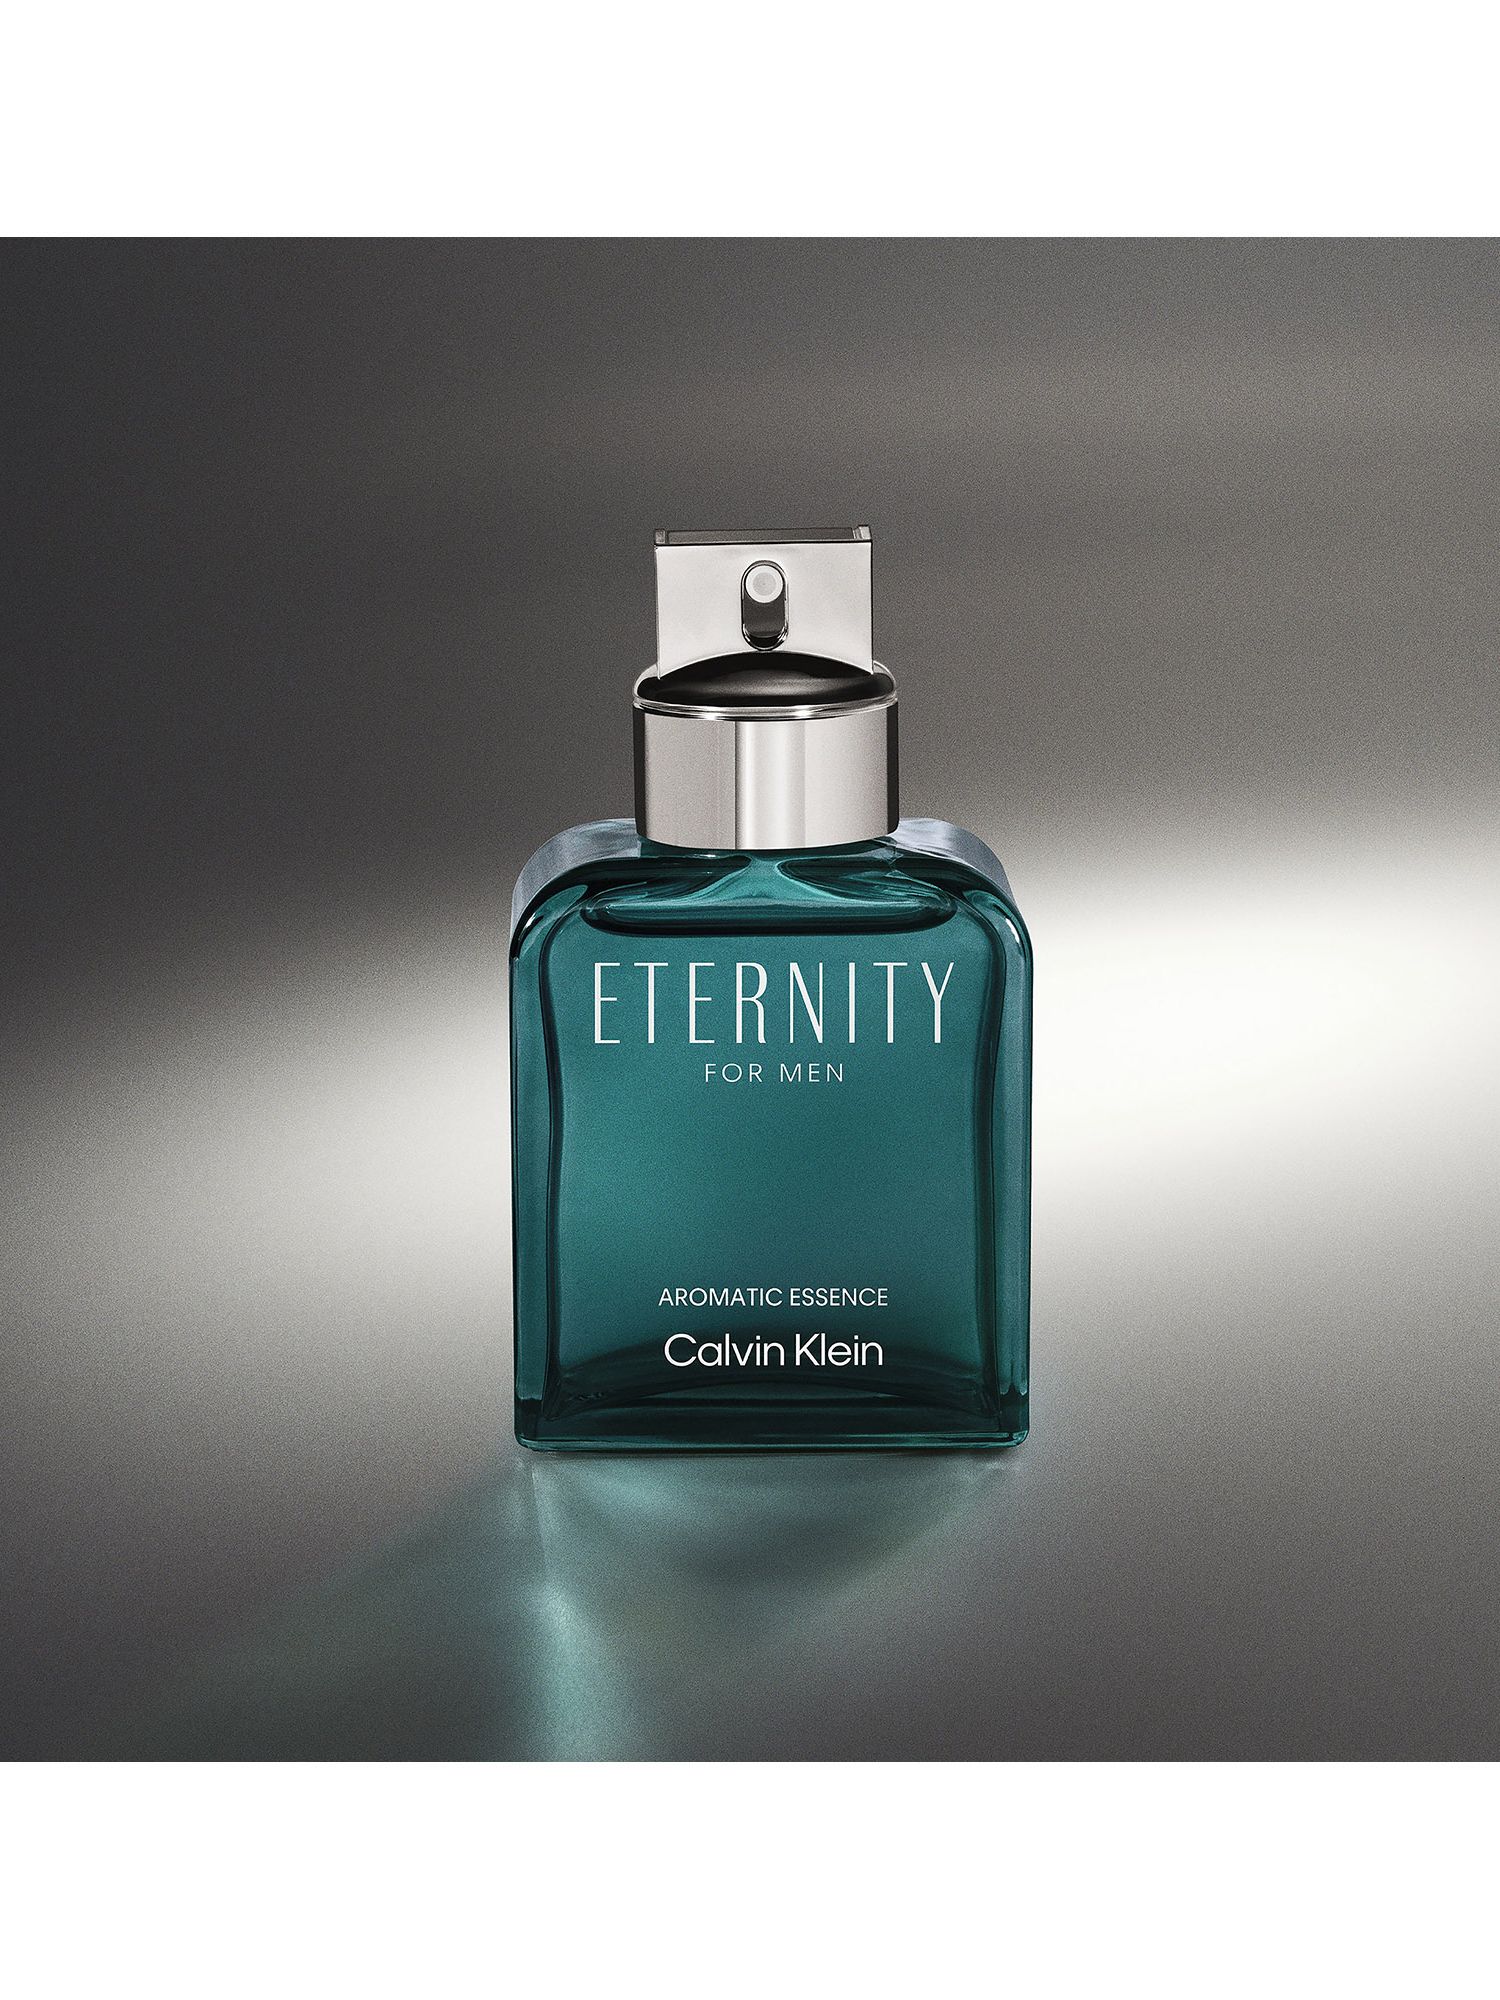 Calvin Klein Eternity Aromatic Essence for Men Eau de Parfum Intense, 100ml 5